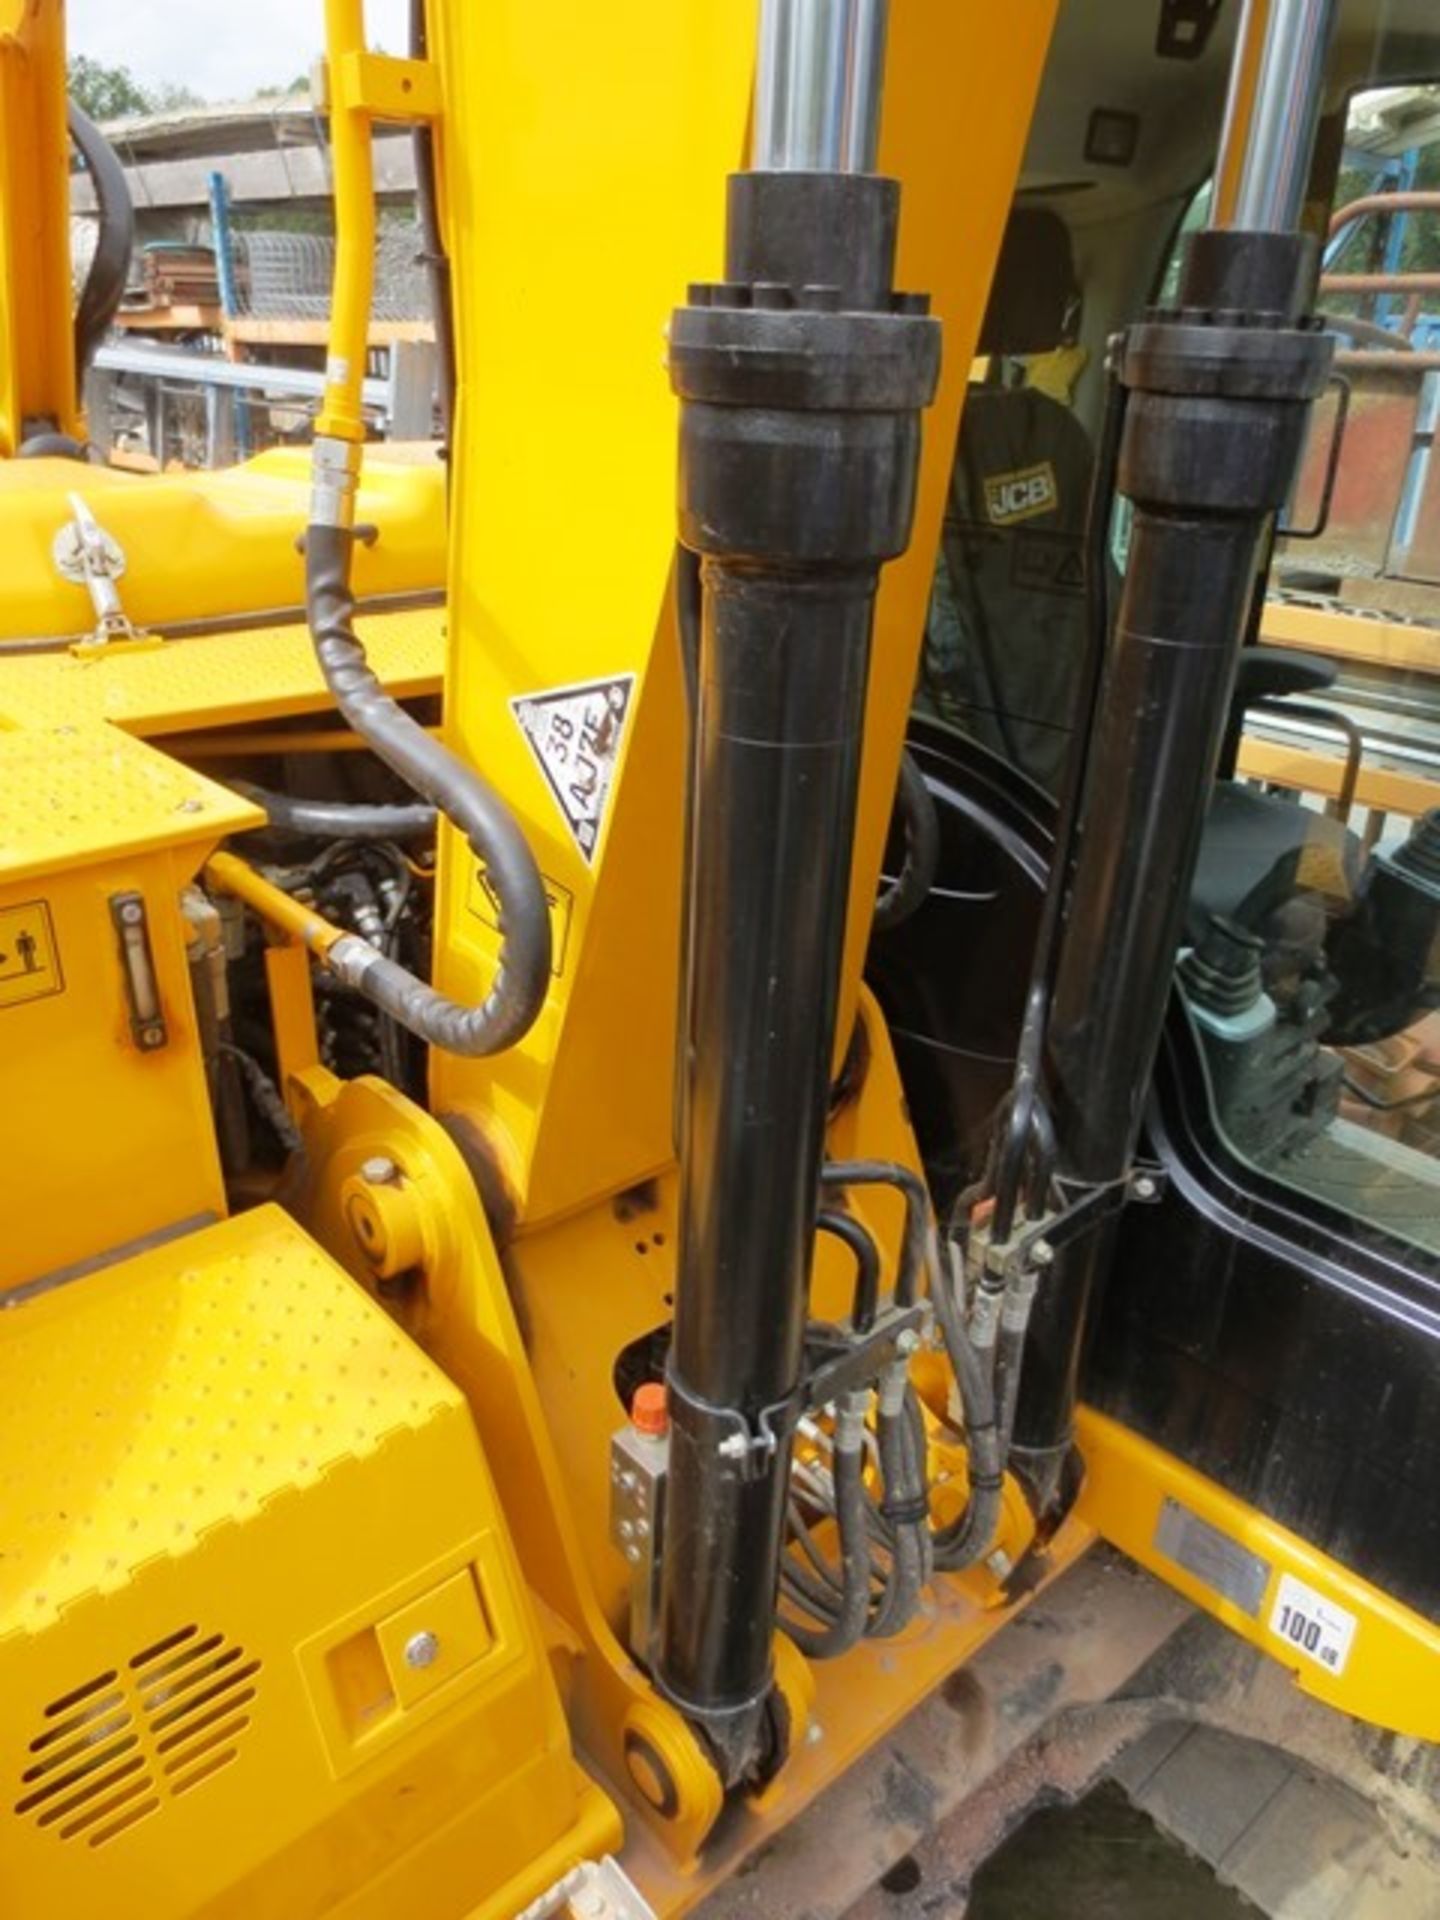 JCB JS130LC T4i IIIB steel tracked hydraulic excavator, product ID No: JCBJS13EVO2134453 (2014), - Image 10 of 19